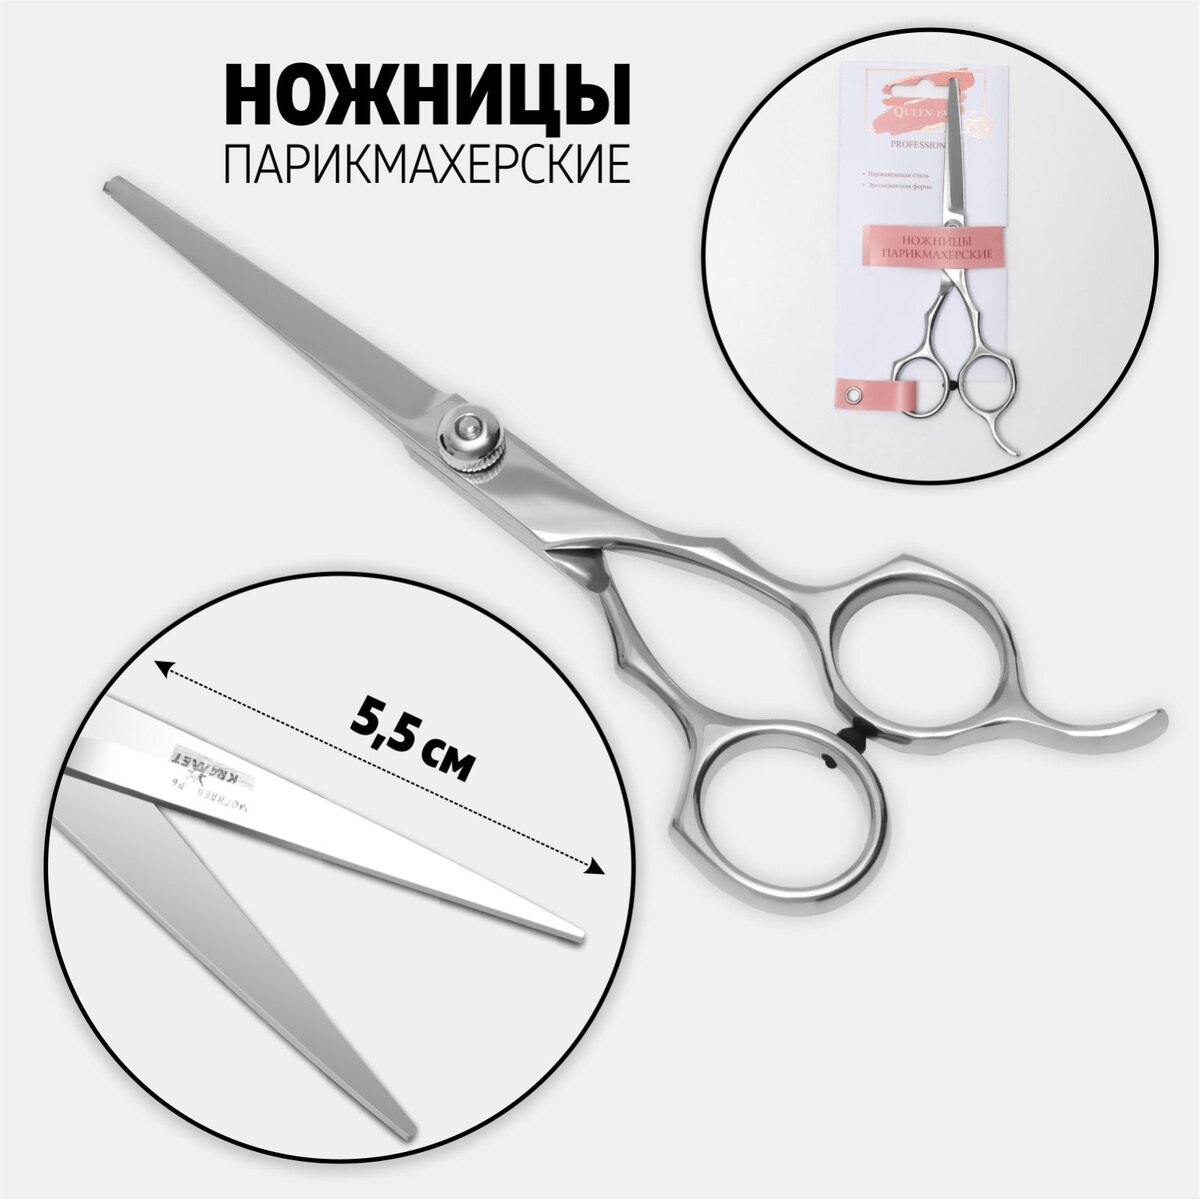 Ножницы парикмахерские с упором, лезвие — 5,5 см, цвет серебристый ножницы хозяйственные gefu металлические